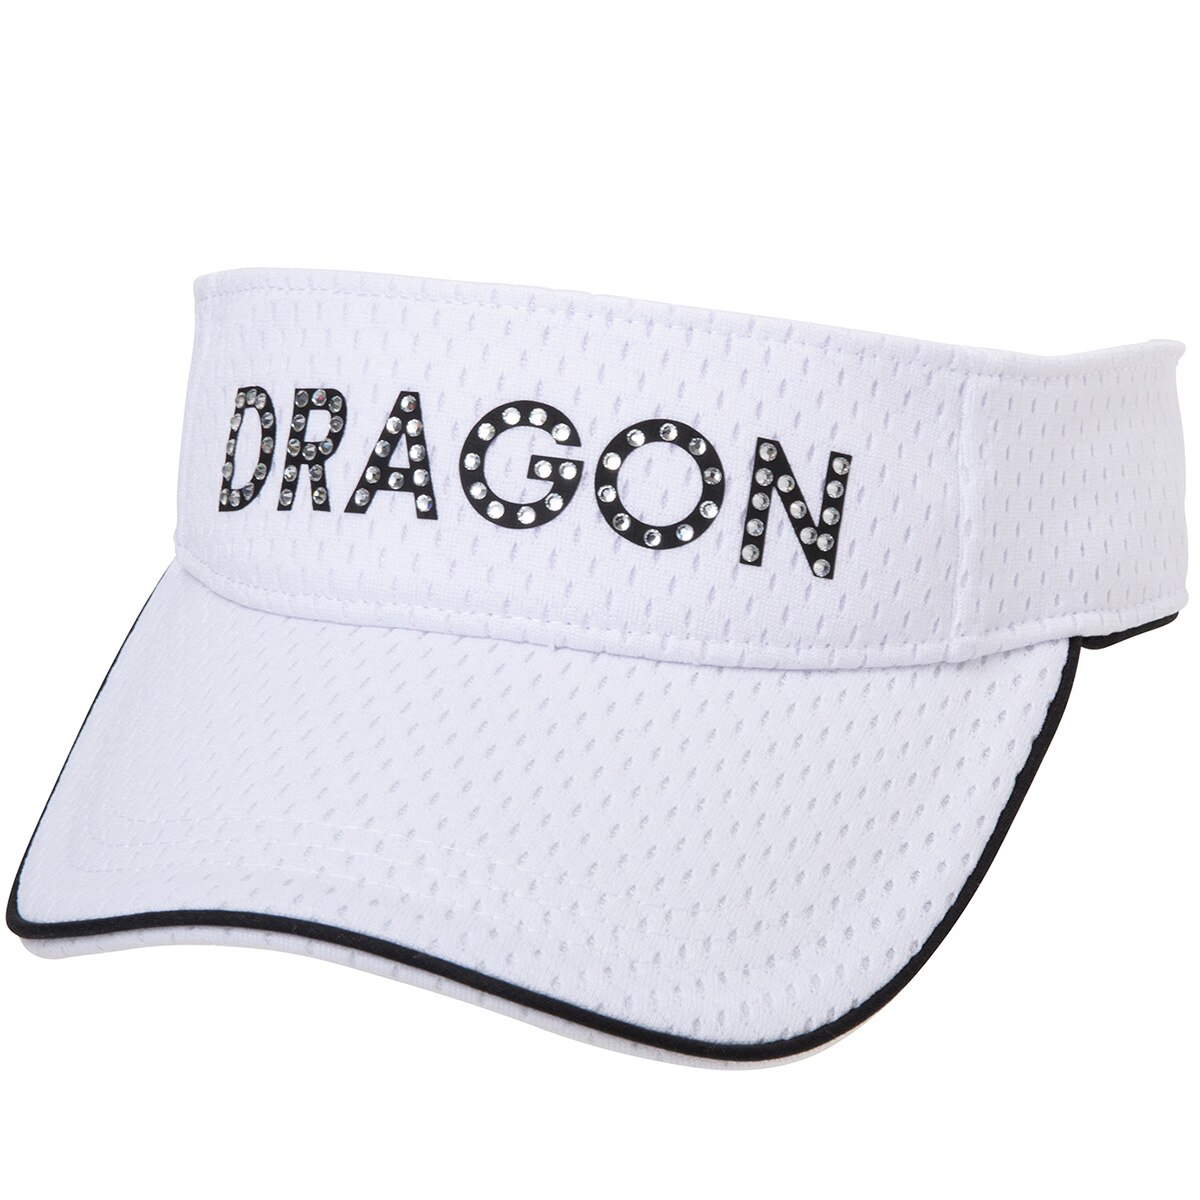 ダンスウィズドラゴン(Dance With Dragon) 帽子 通販｜GDOゴルフショップ